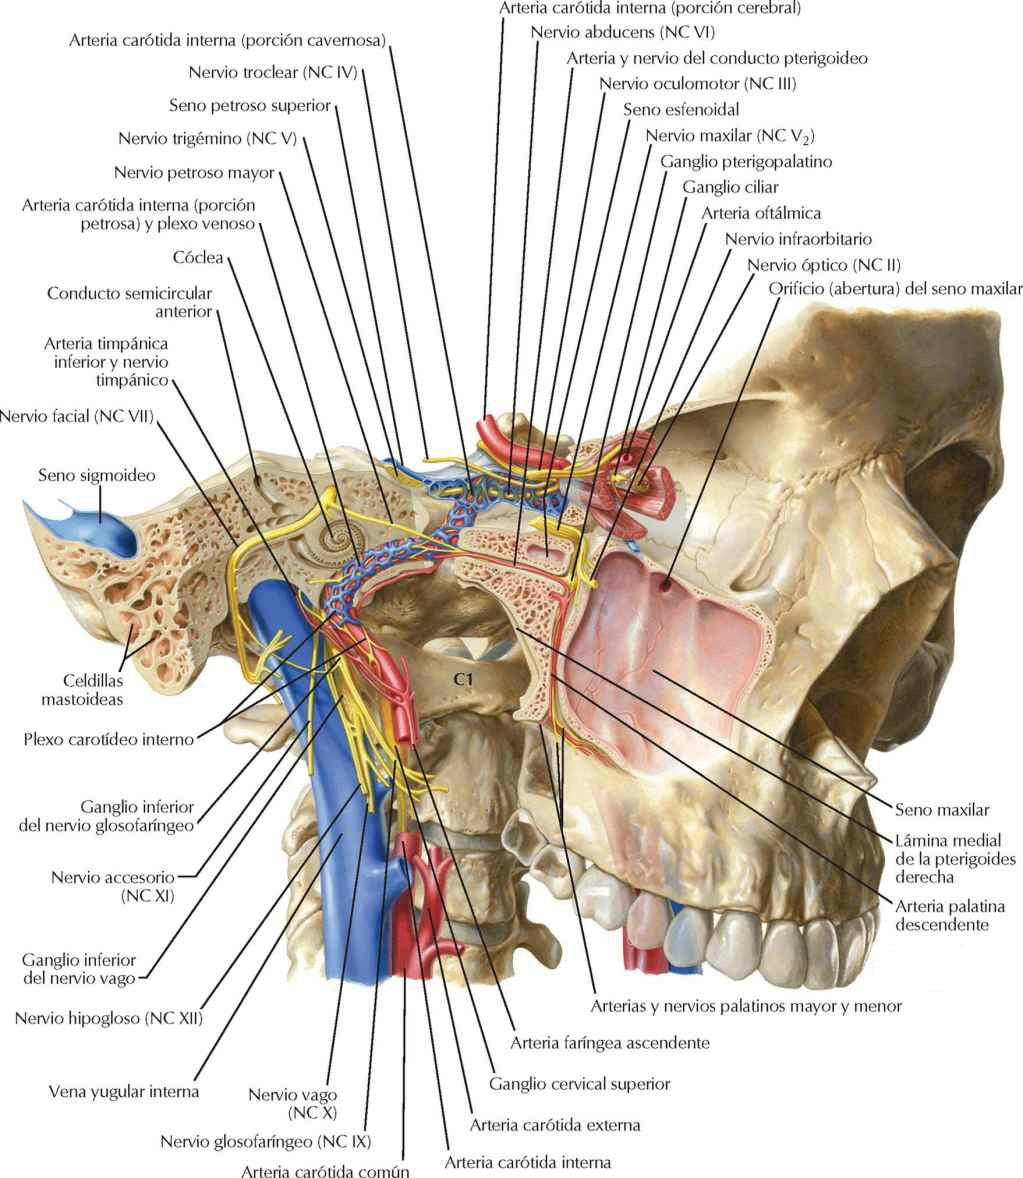 Orientación de nervios y vasos de la base
del cráneo.